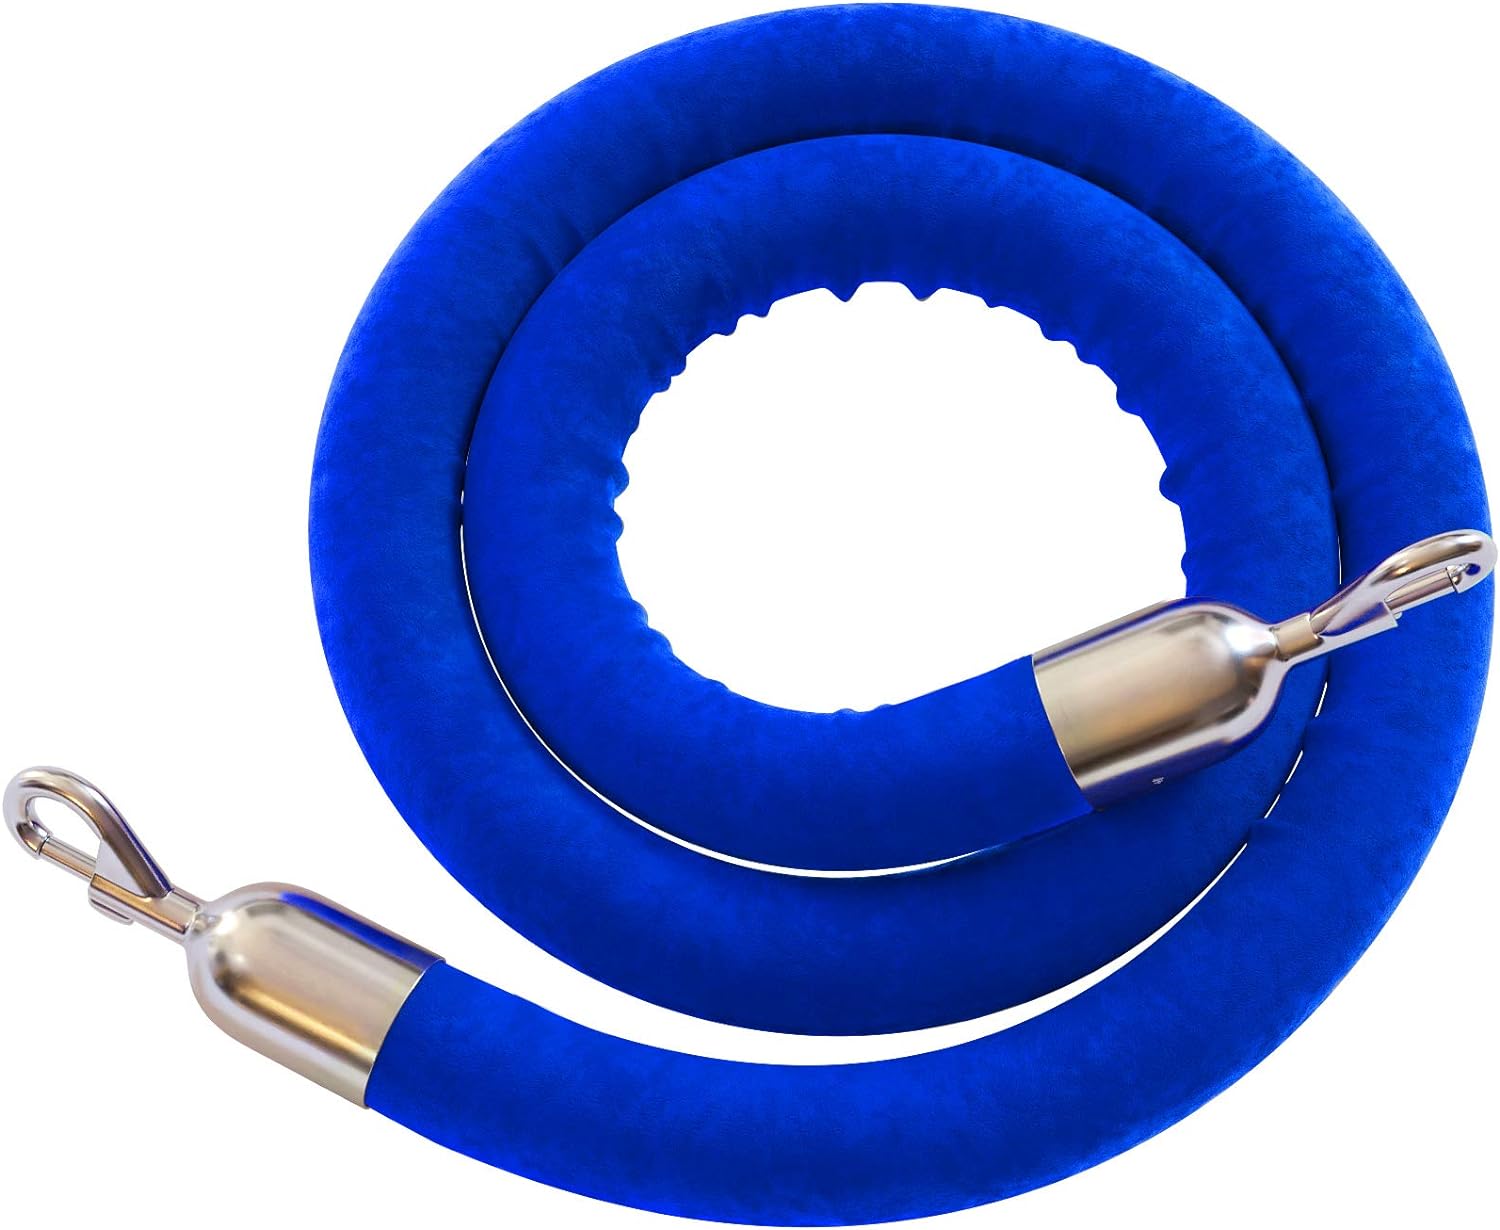 Blue Velvet Ropes